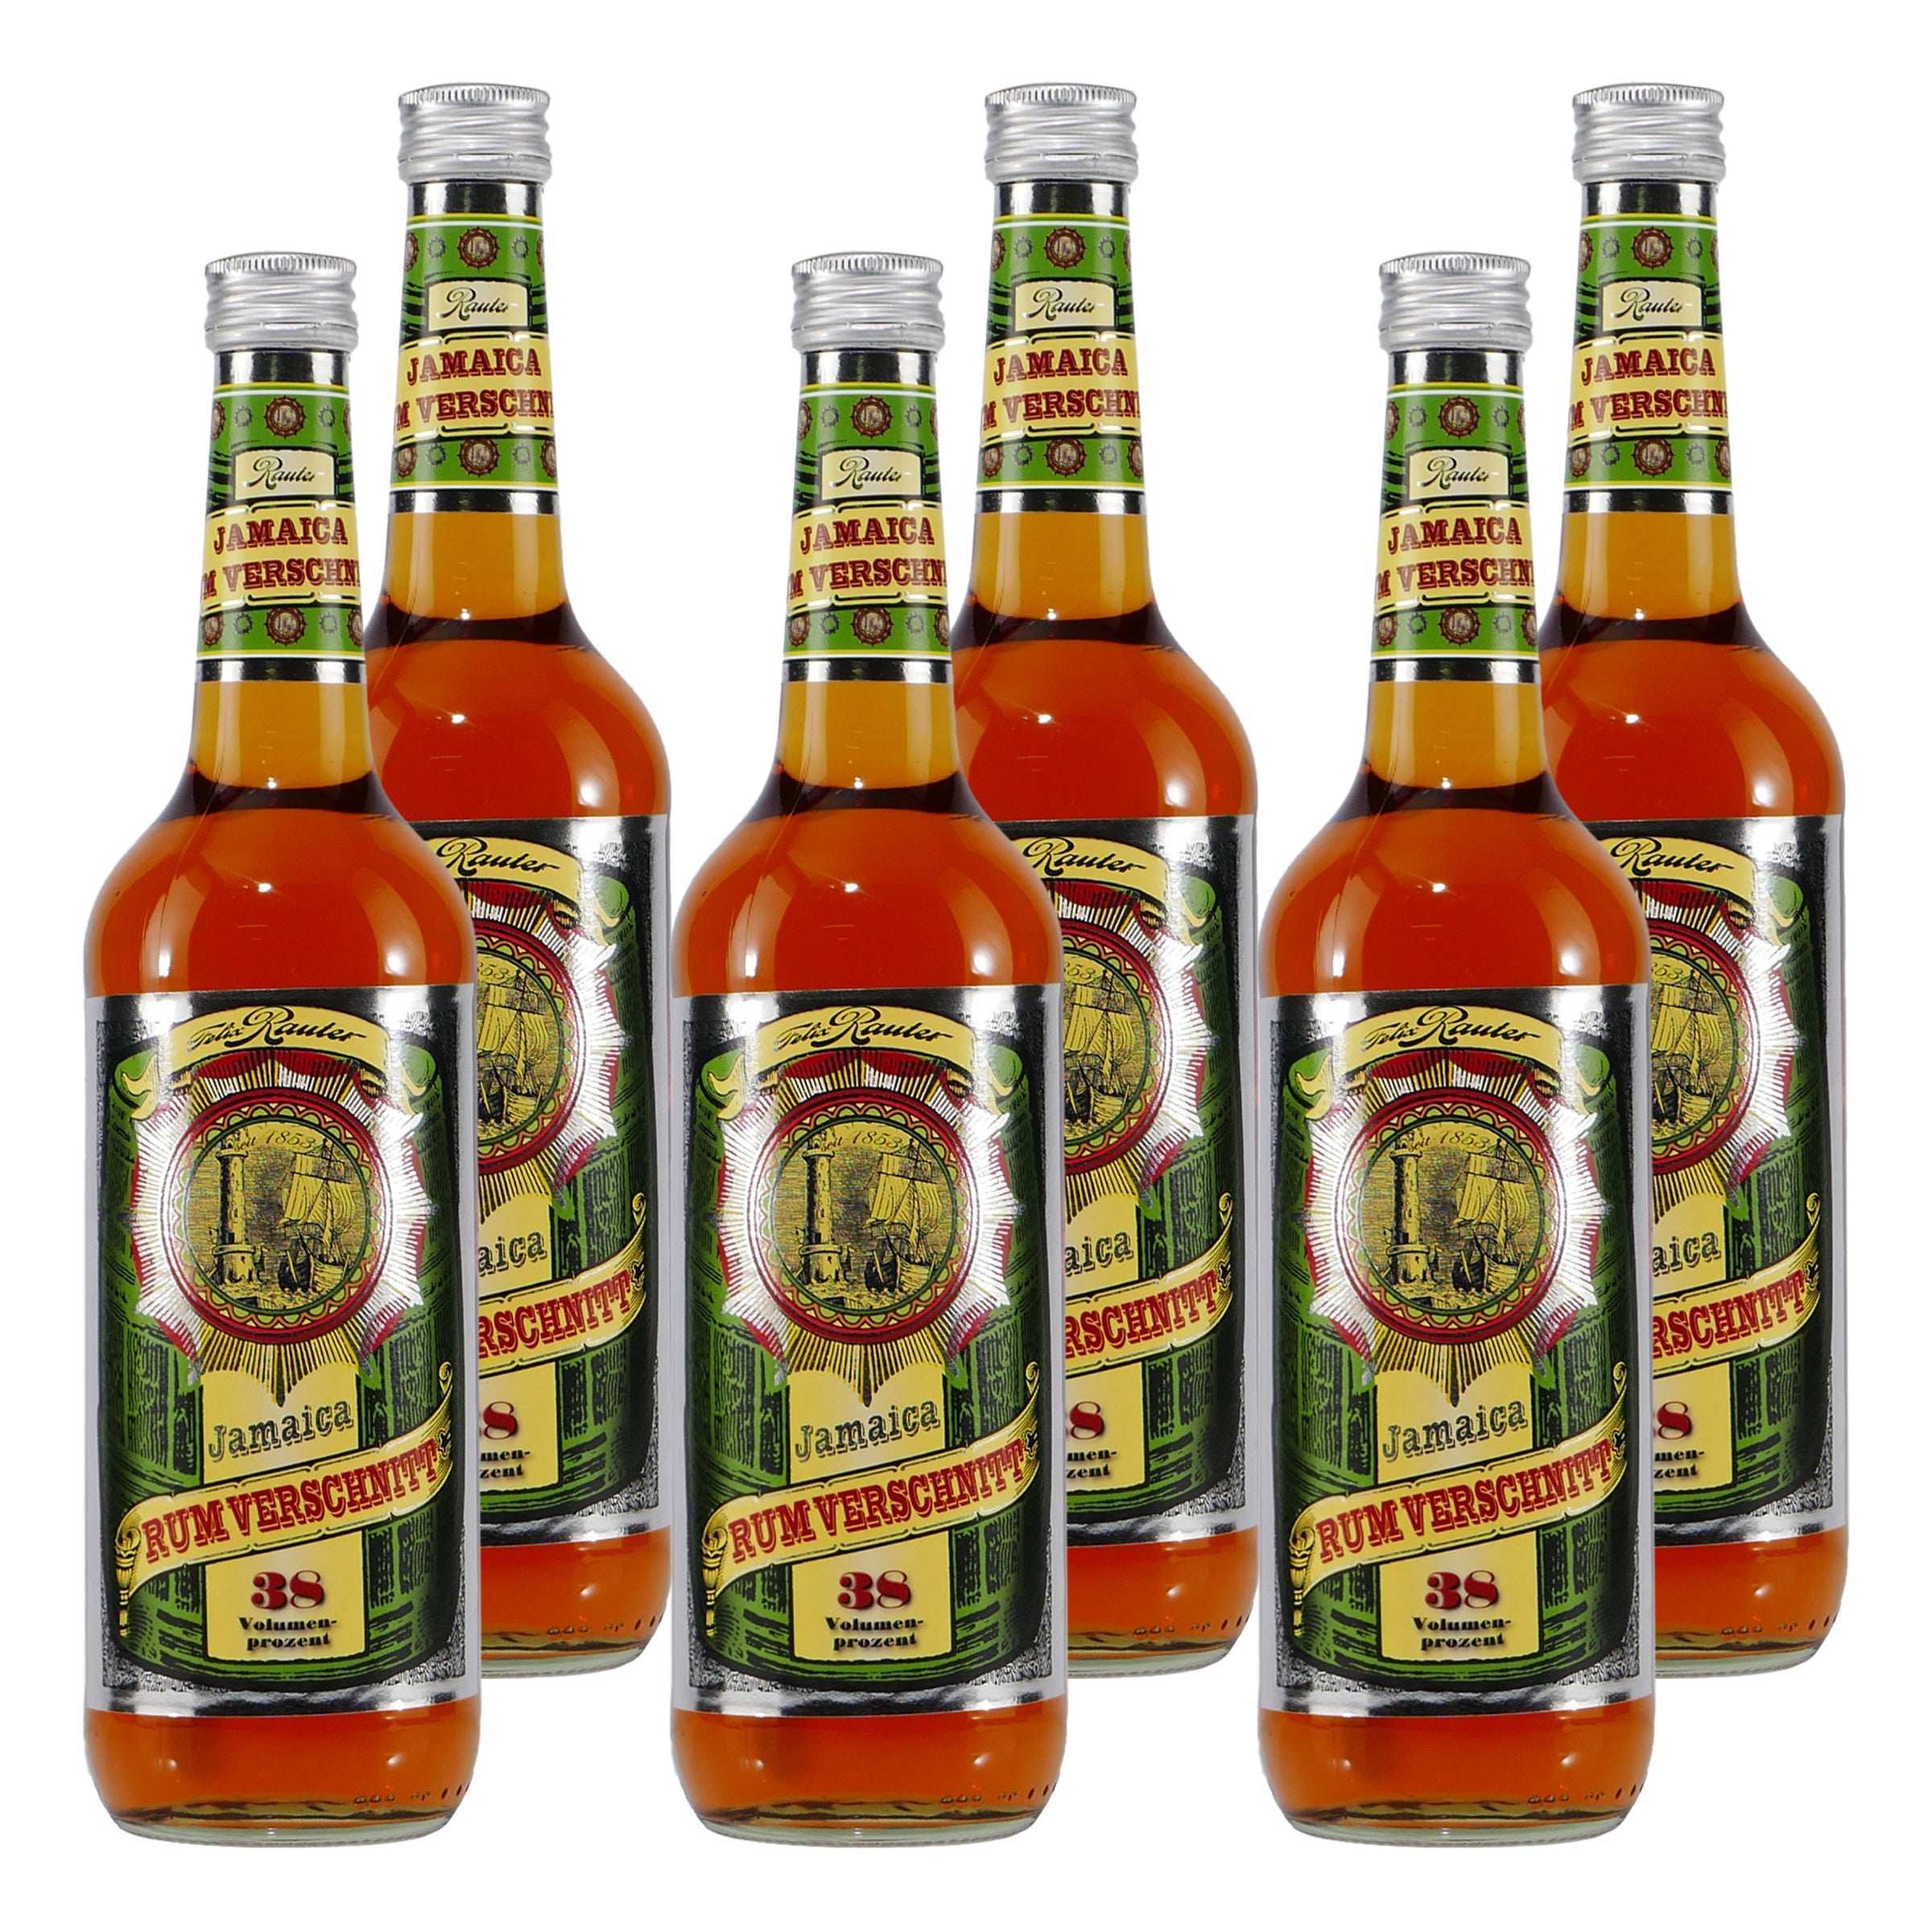 Rauter Jamaica Rum Verschnitt (6 x 0,7L)